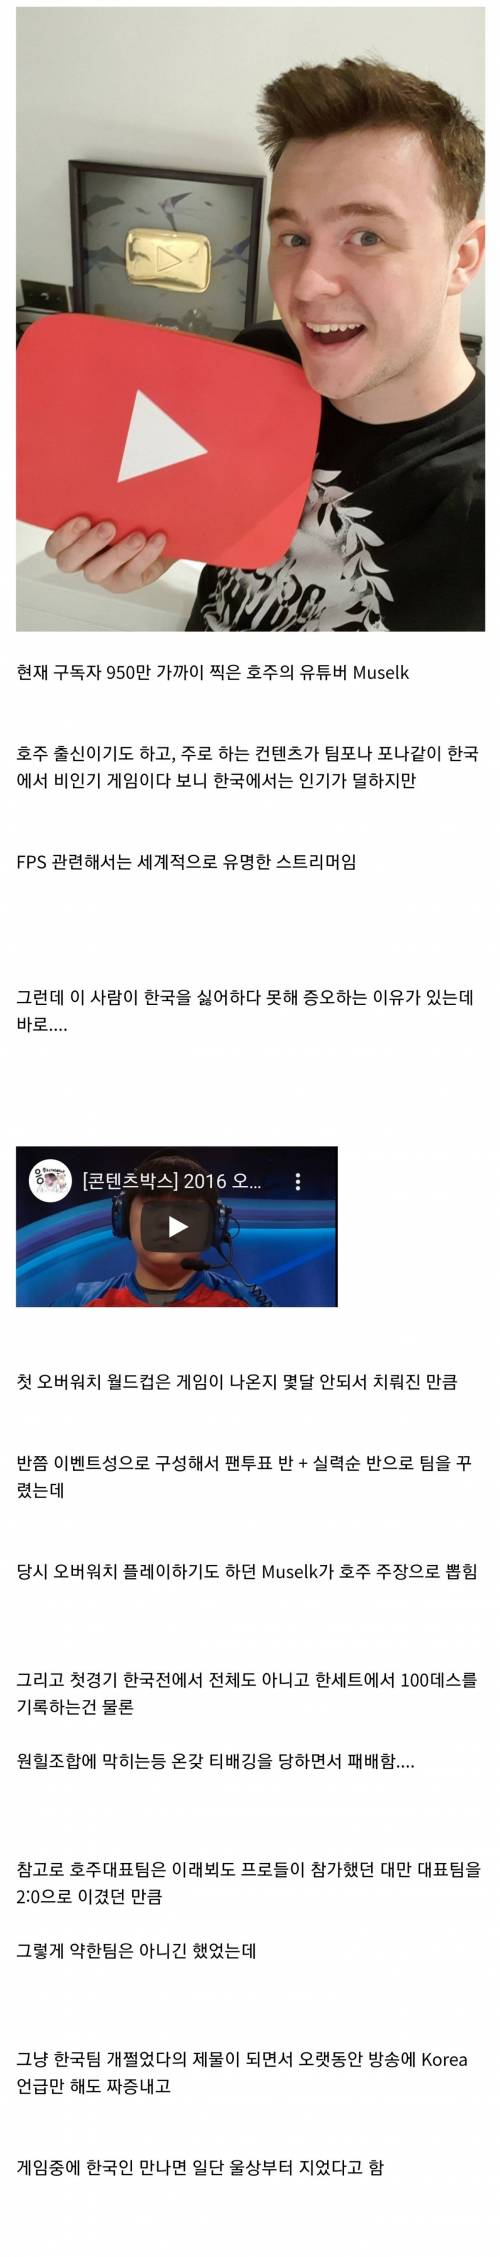 어느 구독자 900만 유튜버가 한국을 싫어하는 이유